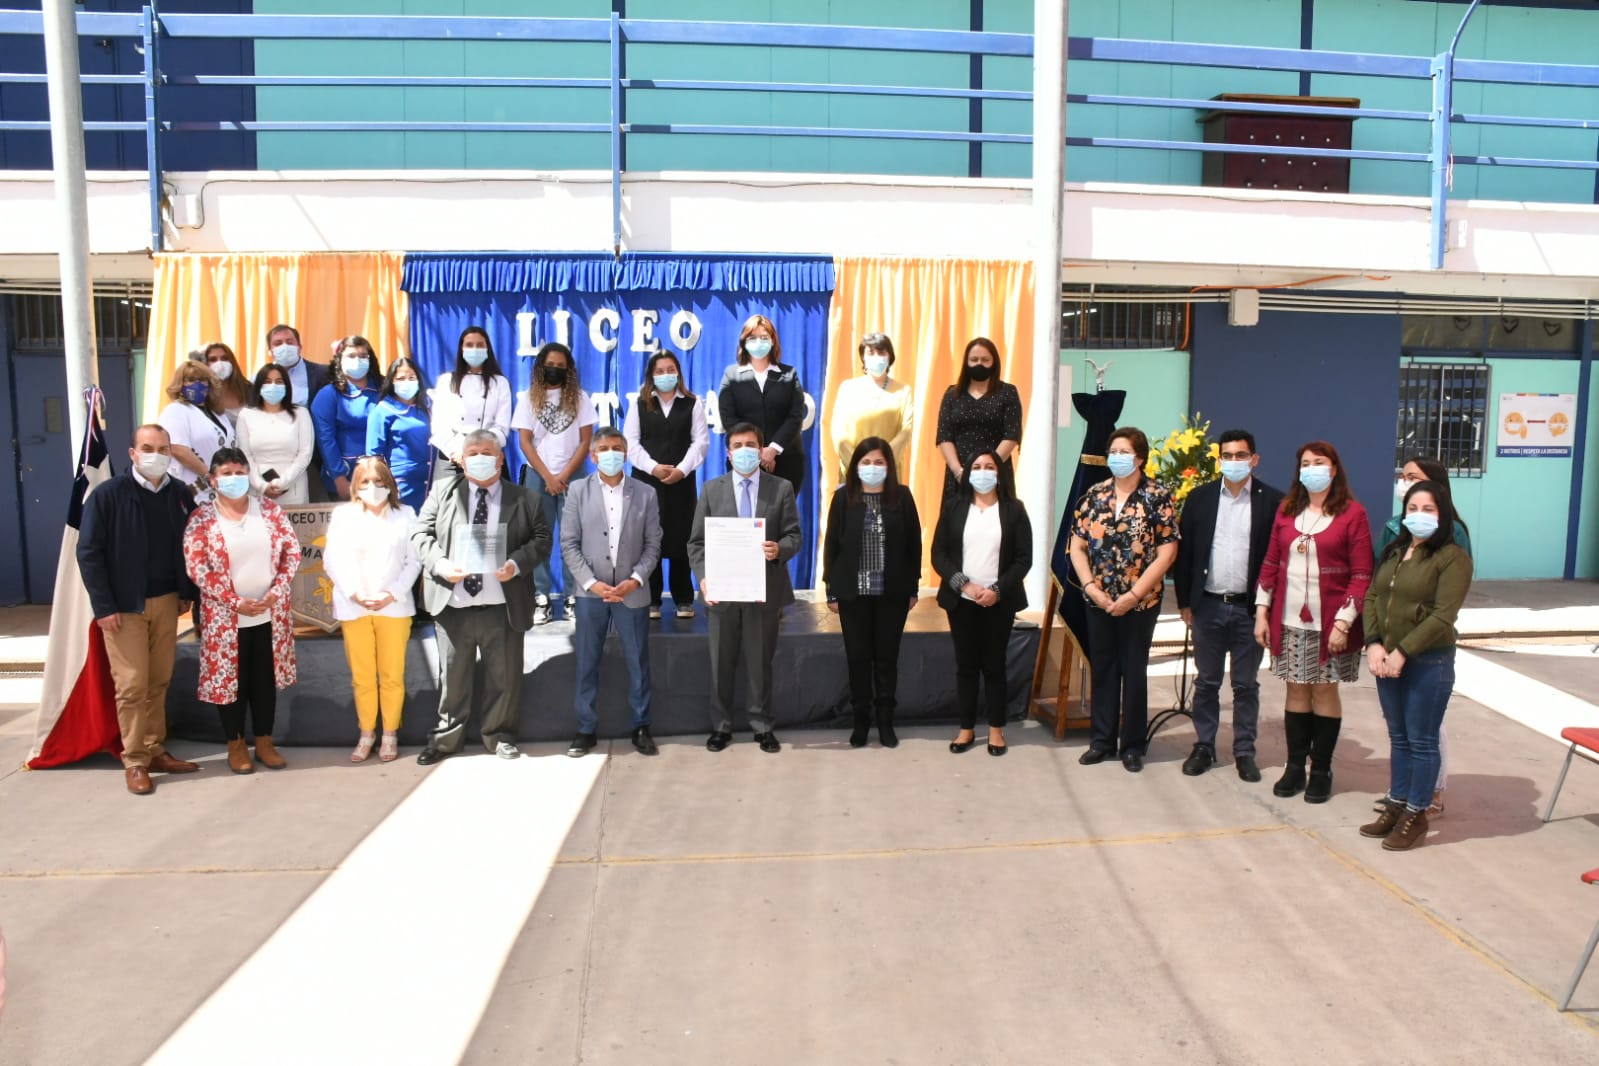 EDUCACIÓN: Liceo Técnico Amancay firma “Compromiso Bicentenario 2021” de excelencia educativa